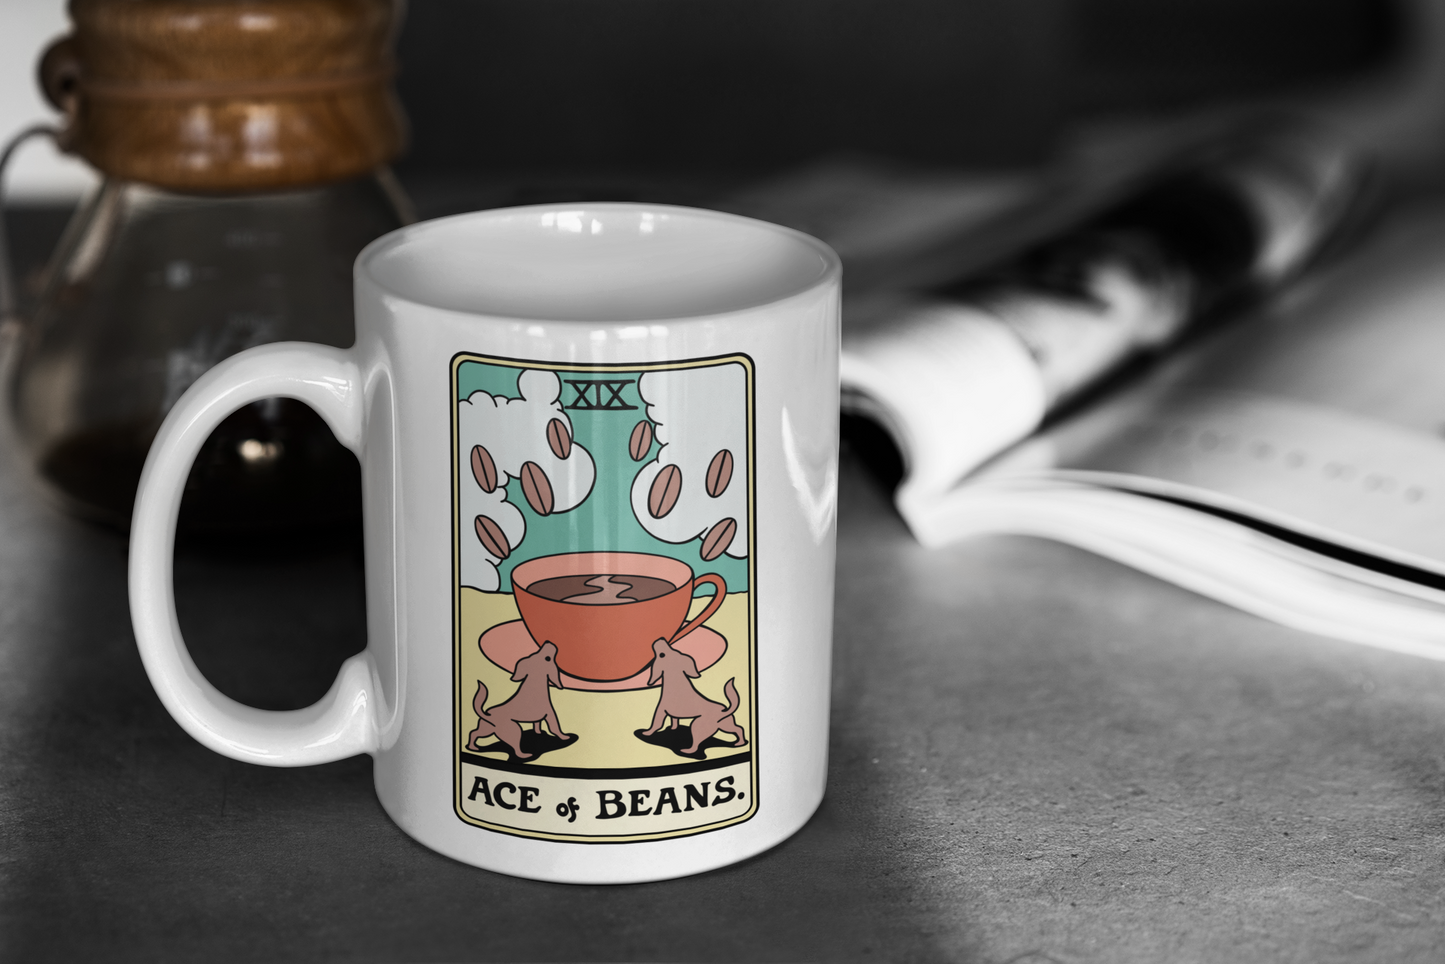 “Ace of Beans” Tarot Mug